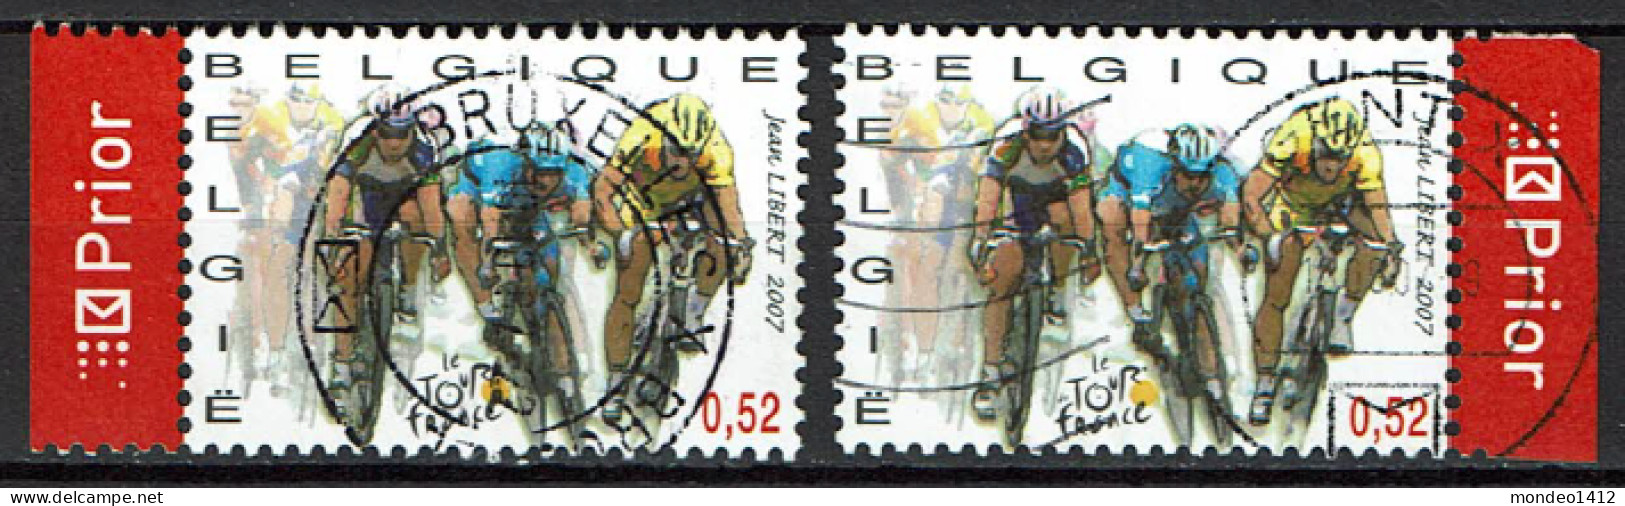 België OBP 3671 - Cyclisme, Cycling, Le Tour De France En Flandre - Usados